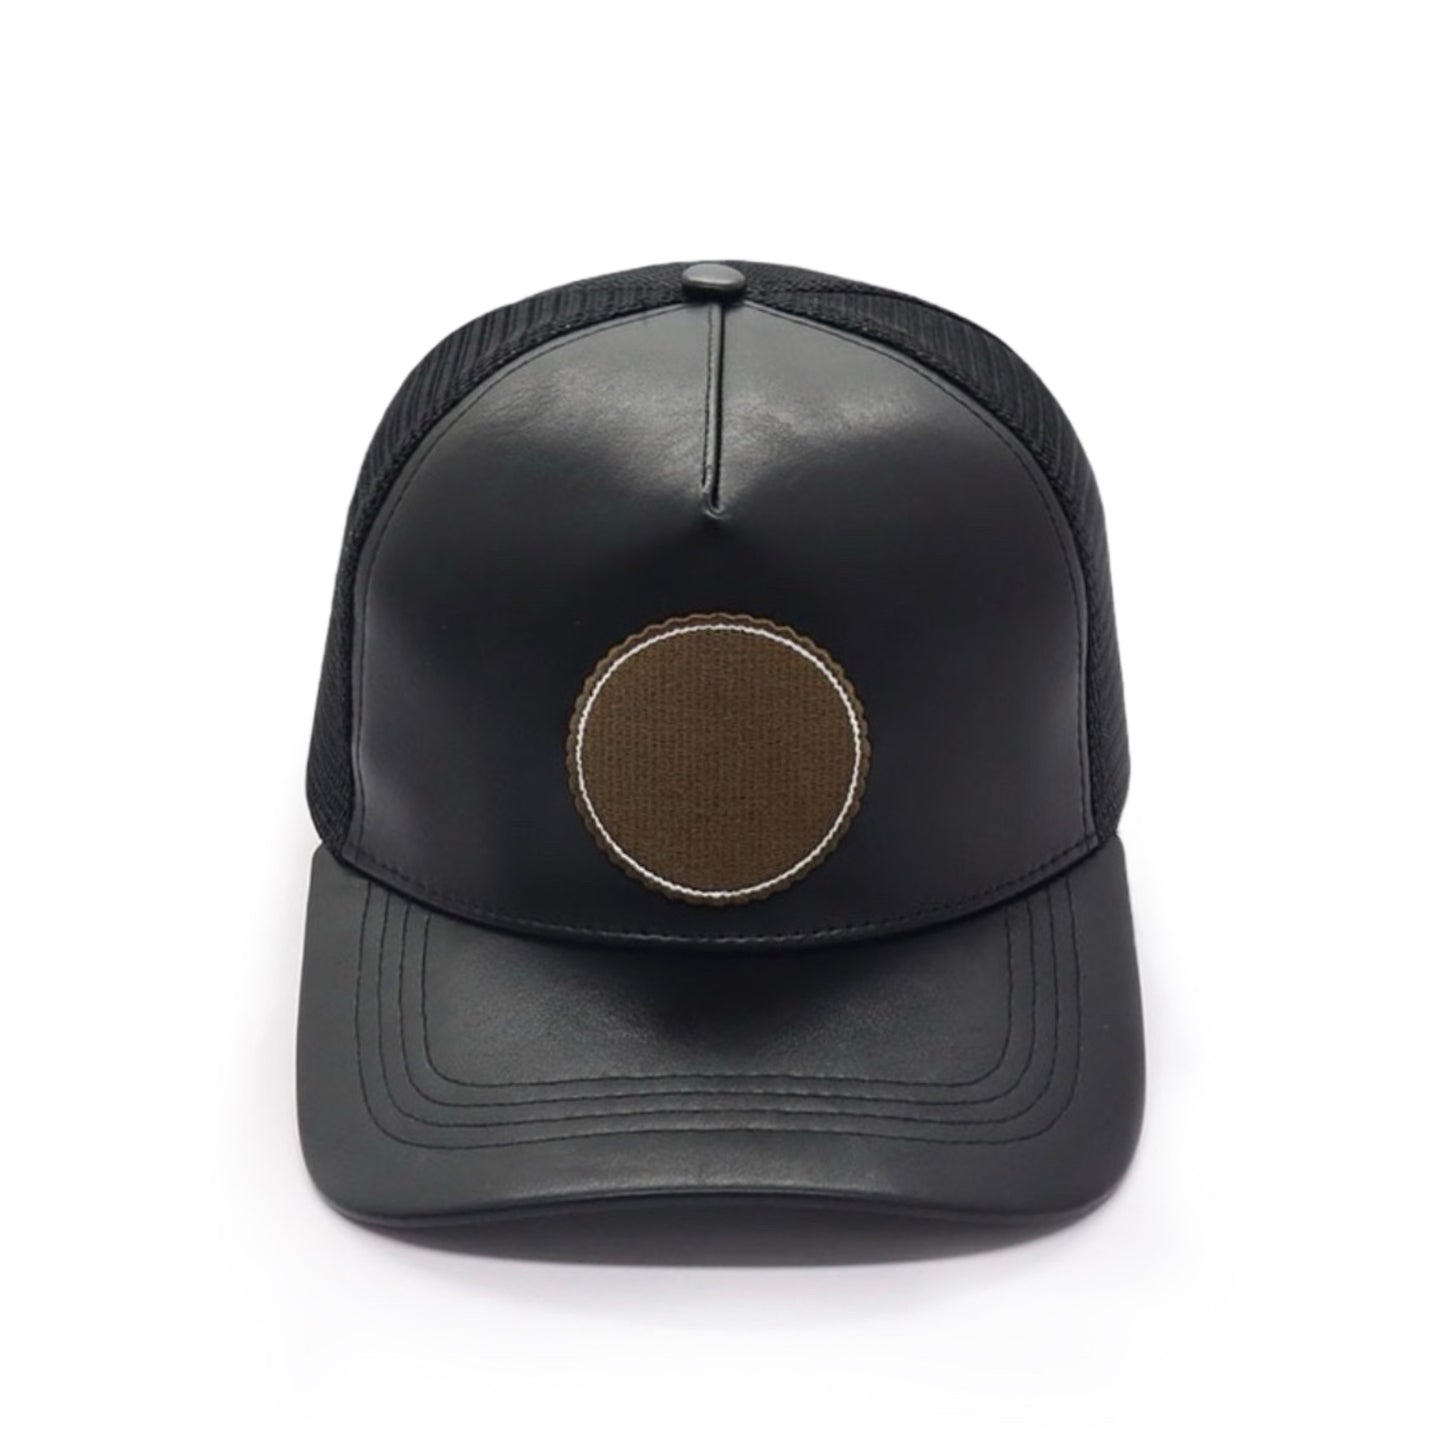 Mr.LIMOU - haut de gamme casquette noir cuir similicuir Eclipse Ebene